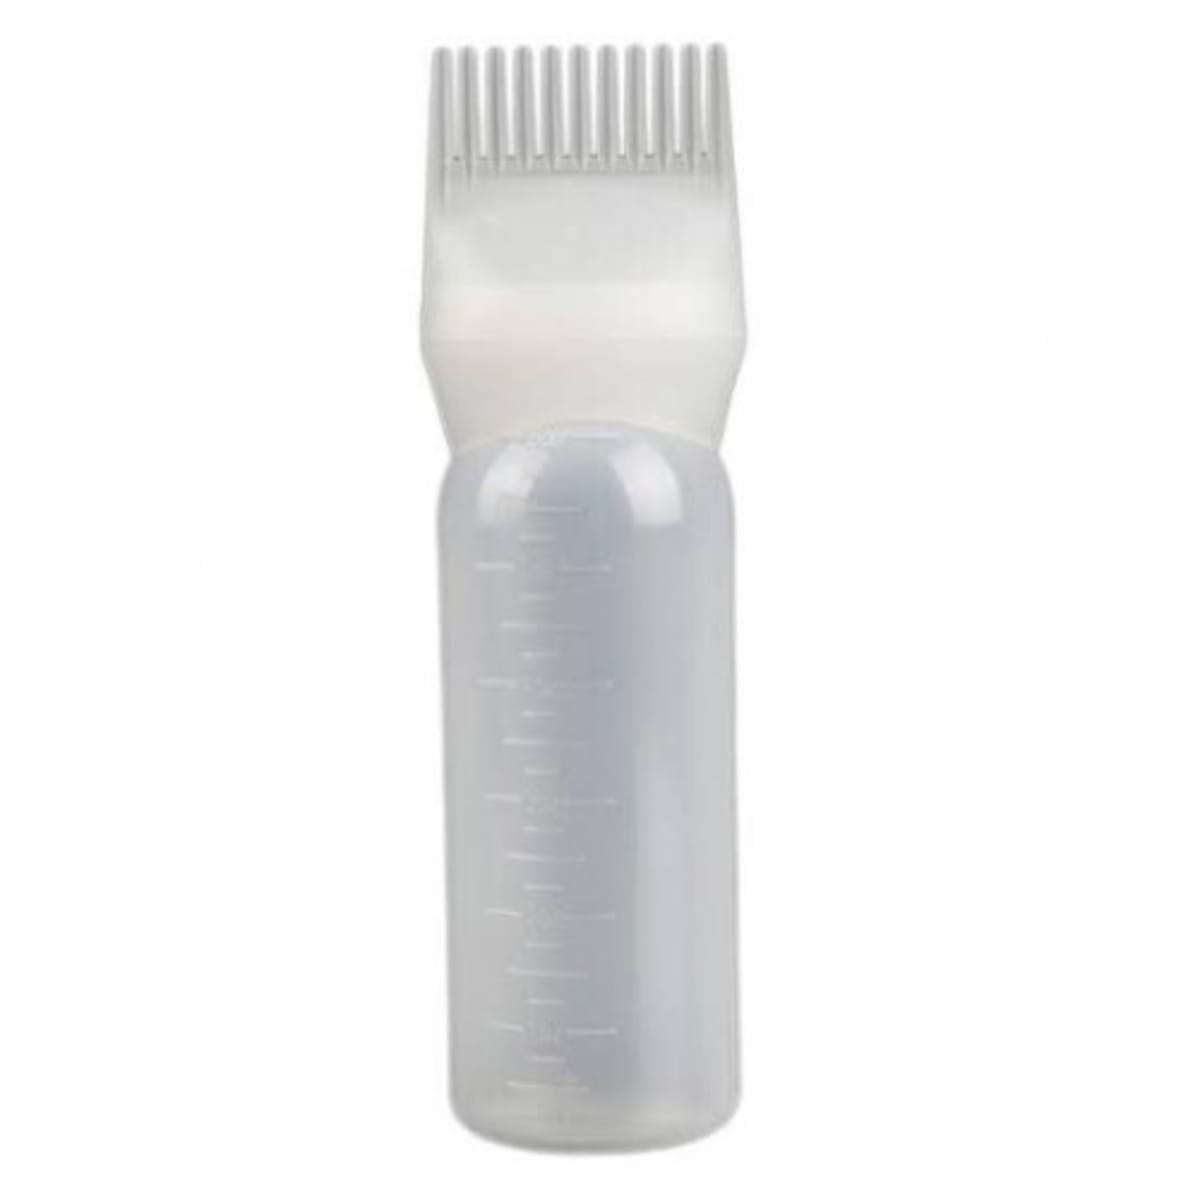 Hair Oil Applicator Comb Bottle 130ml (Pack of 1) Root Comb Applicator /  Shampoo Hair Comb Bottle / Hair Coloring Dye Comb Multipurpose Hair Comb Applicator  Bottle